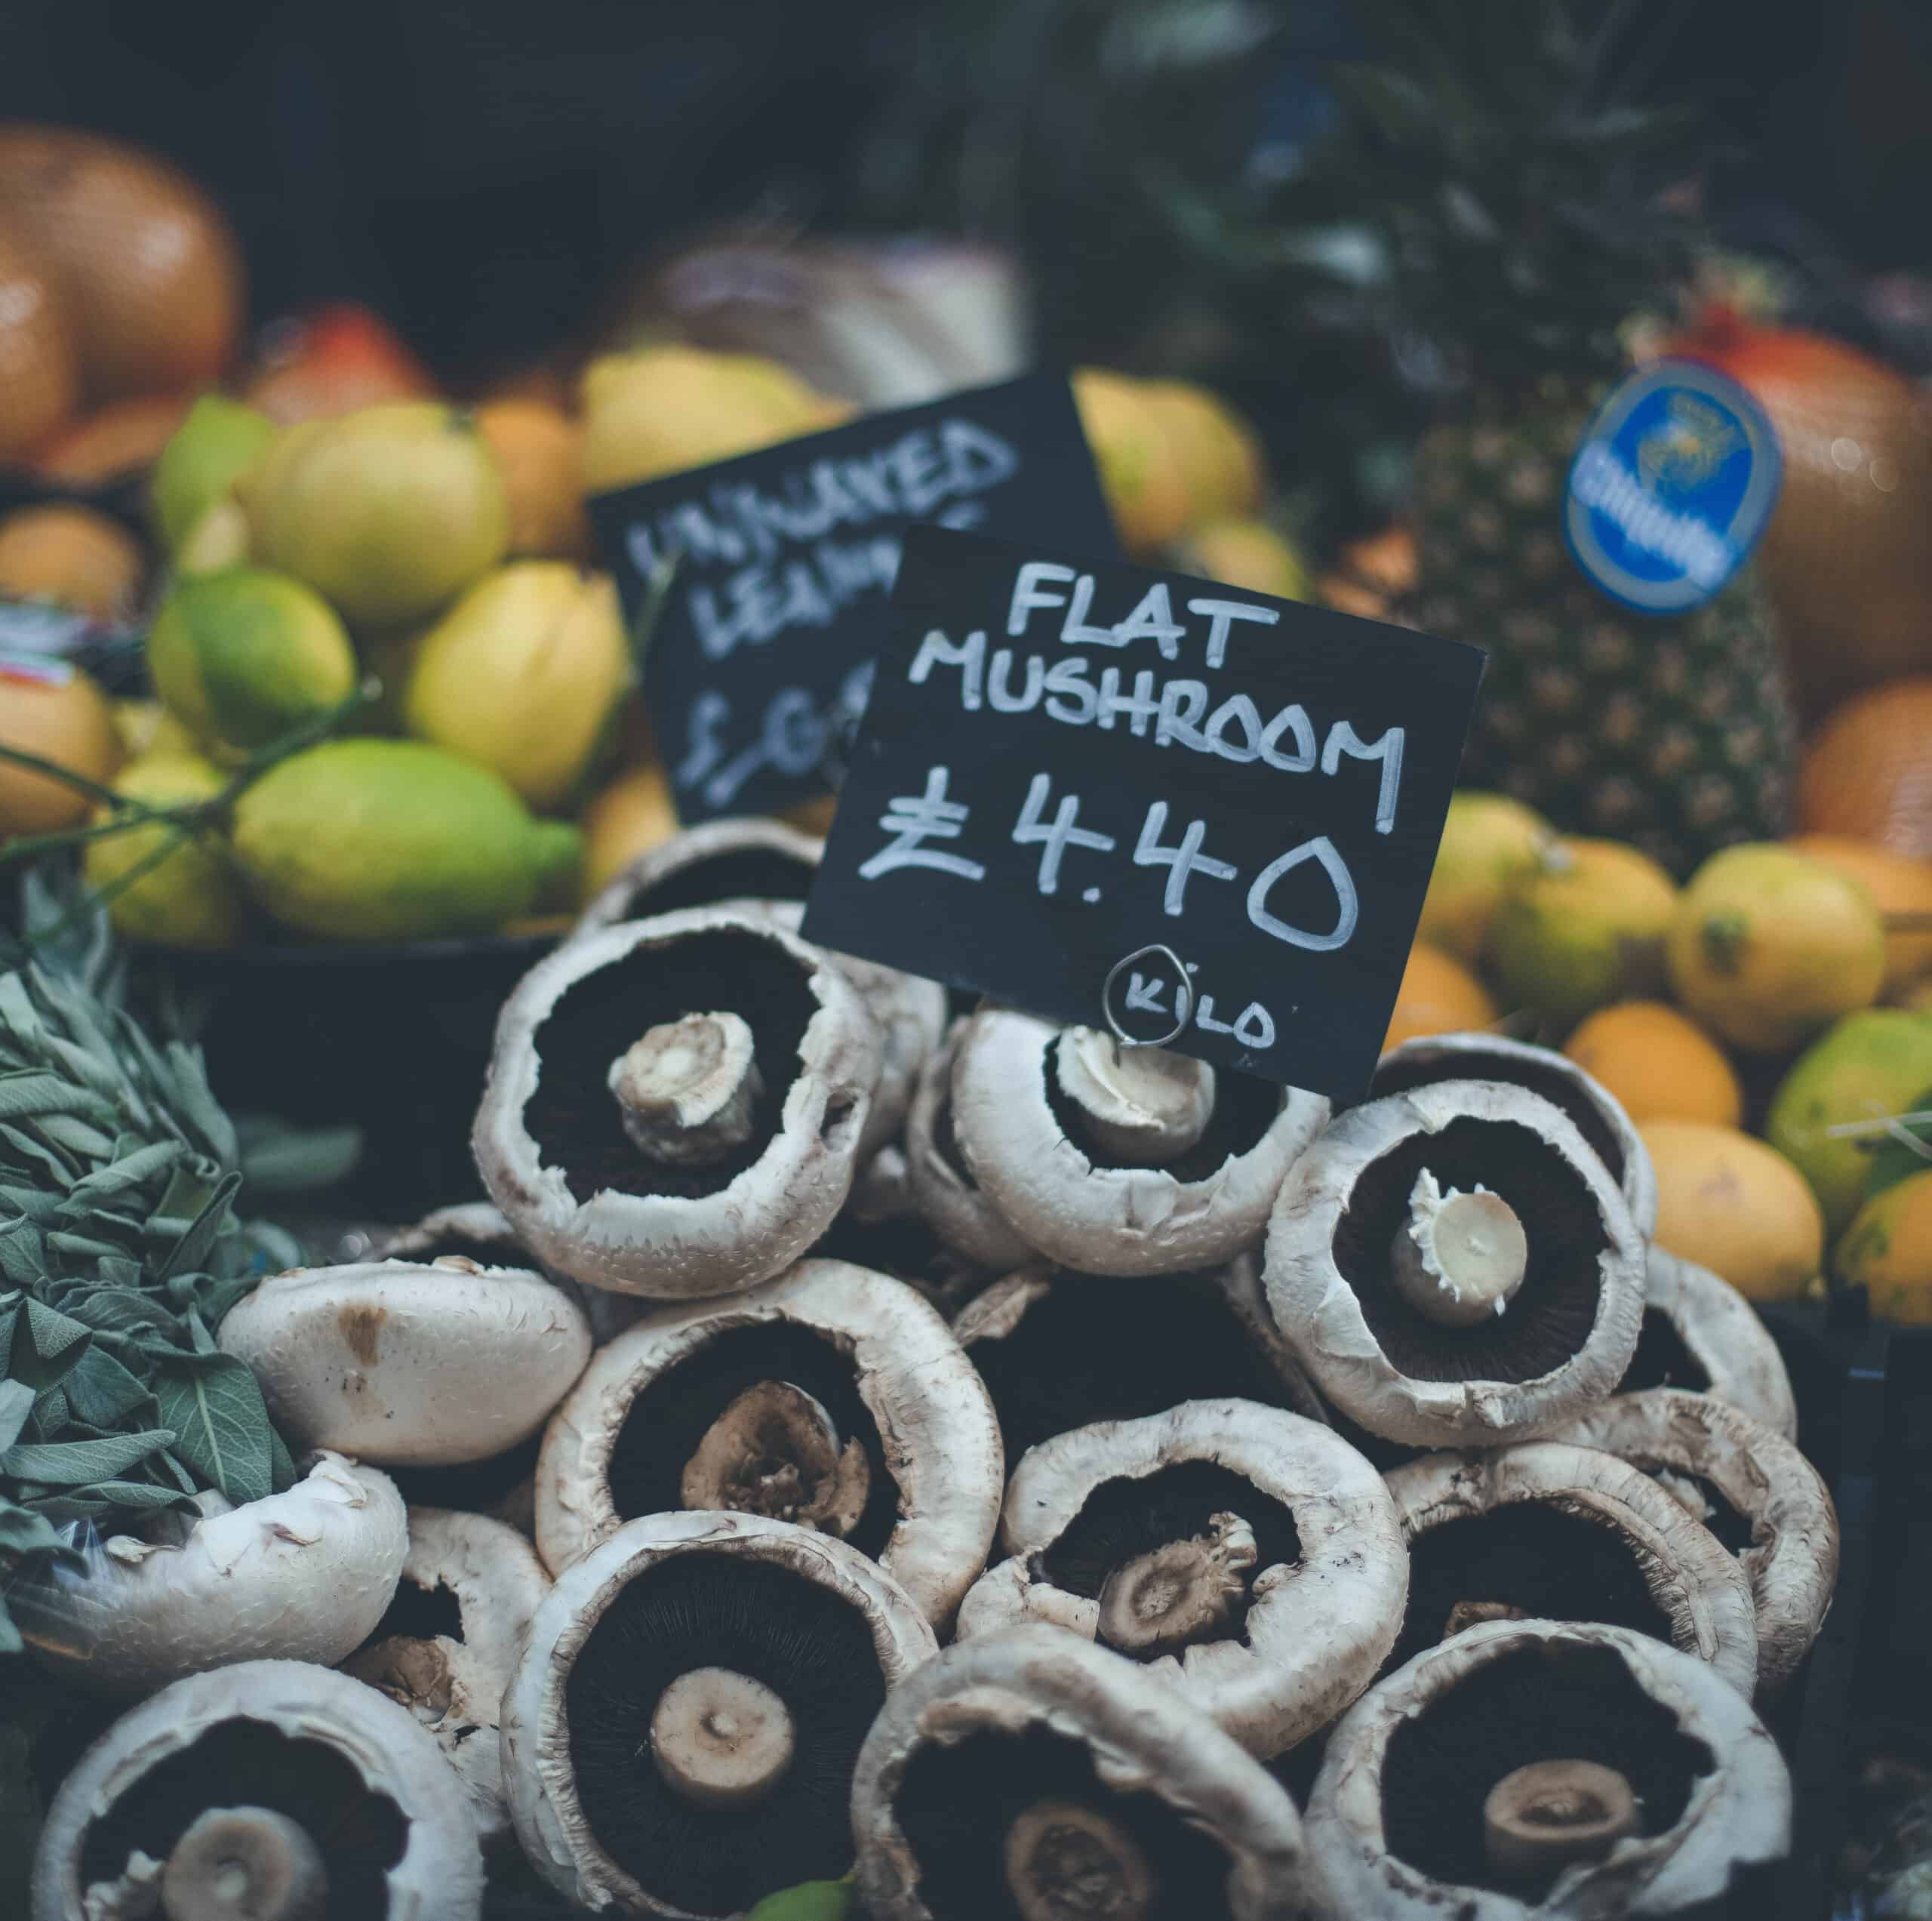 Mushrooms at Borough Market